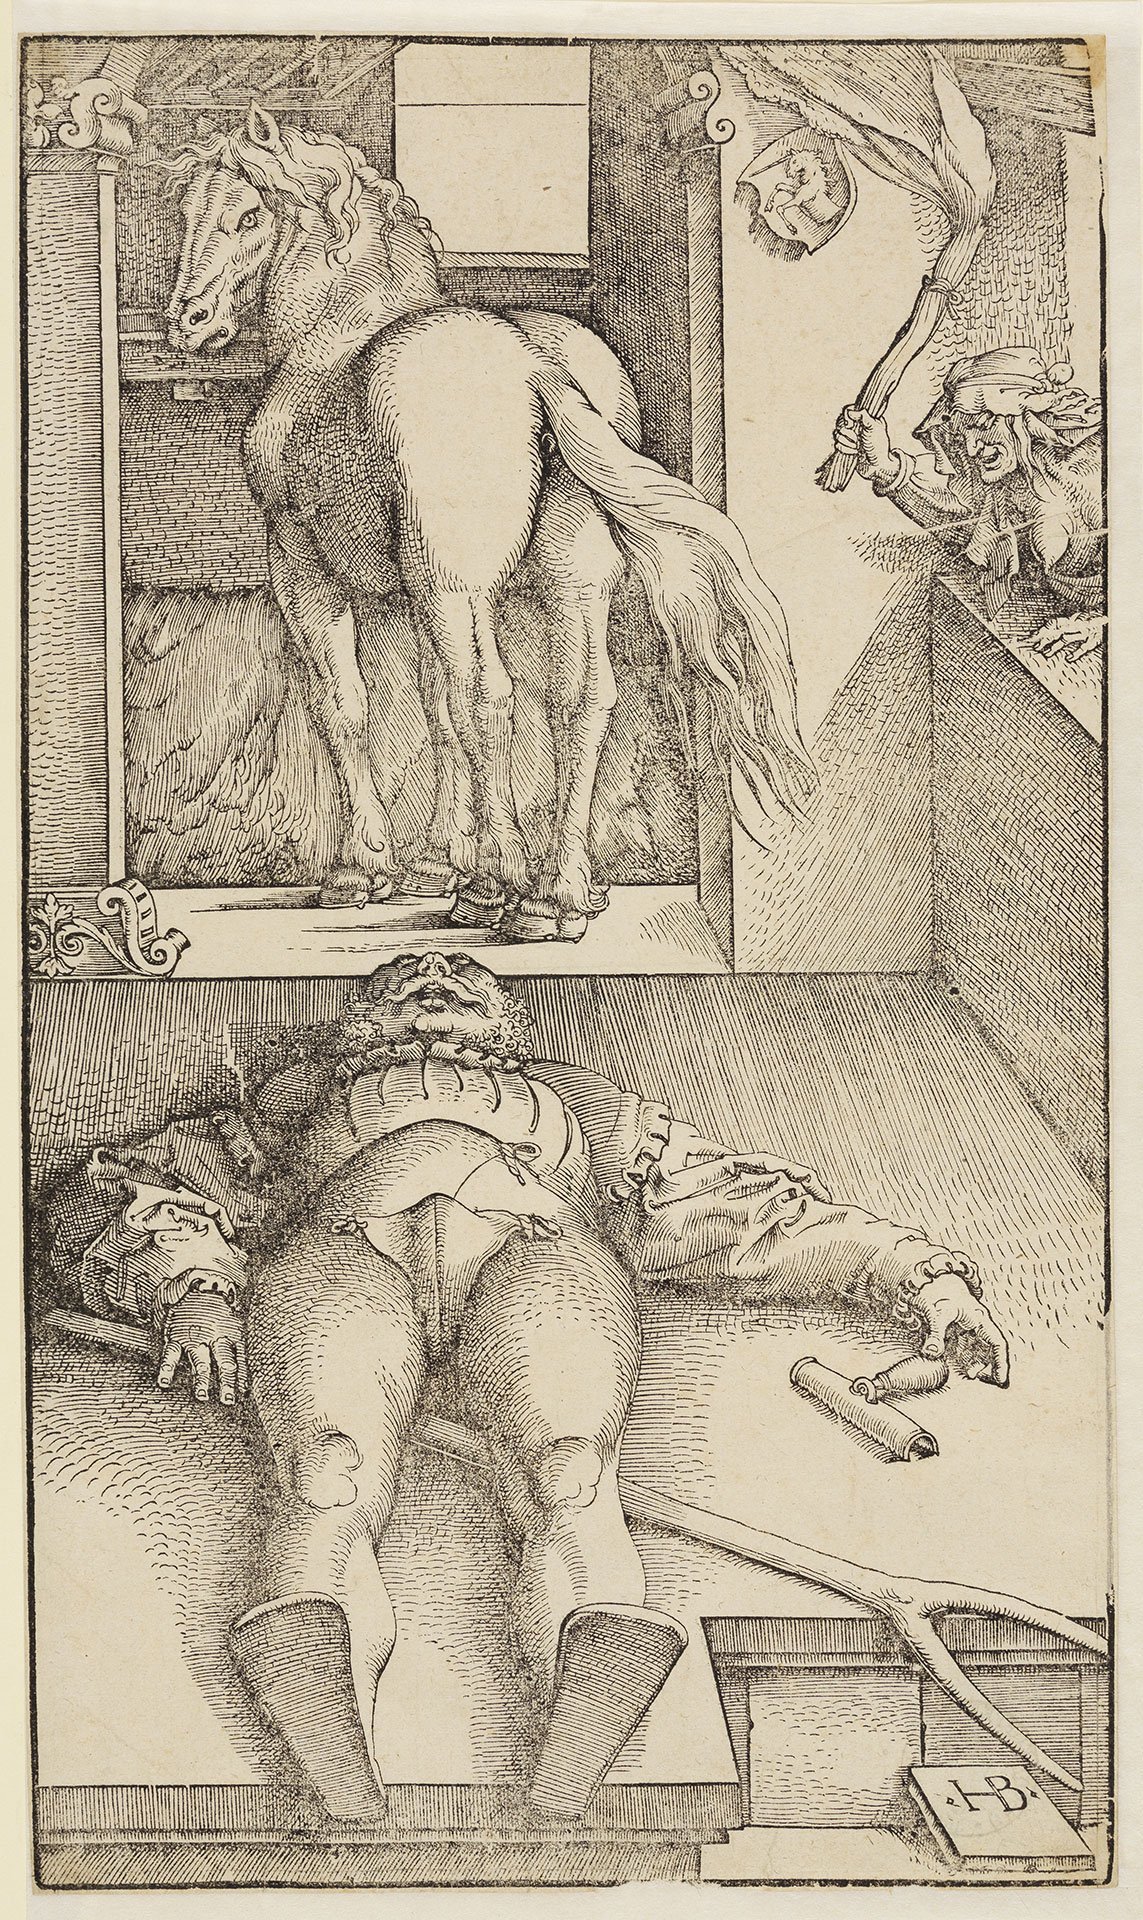 Abbildung des Werks "Der behexte Stallknecht“ des Künstlers Hans Baldung Grien. Es zeigt einen Mann, der auf dem Rücken in einem Stall liegt. Hinter ihm ist ein Pferd.